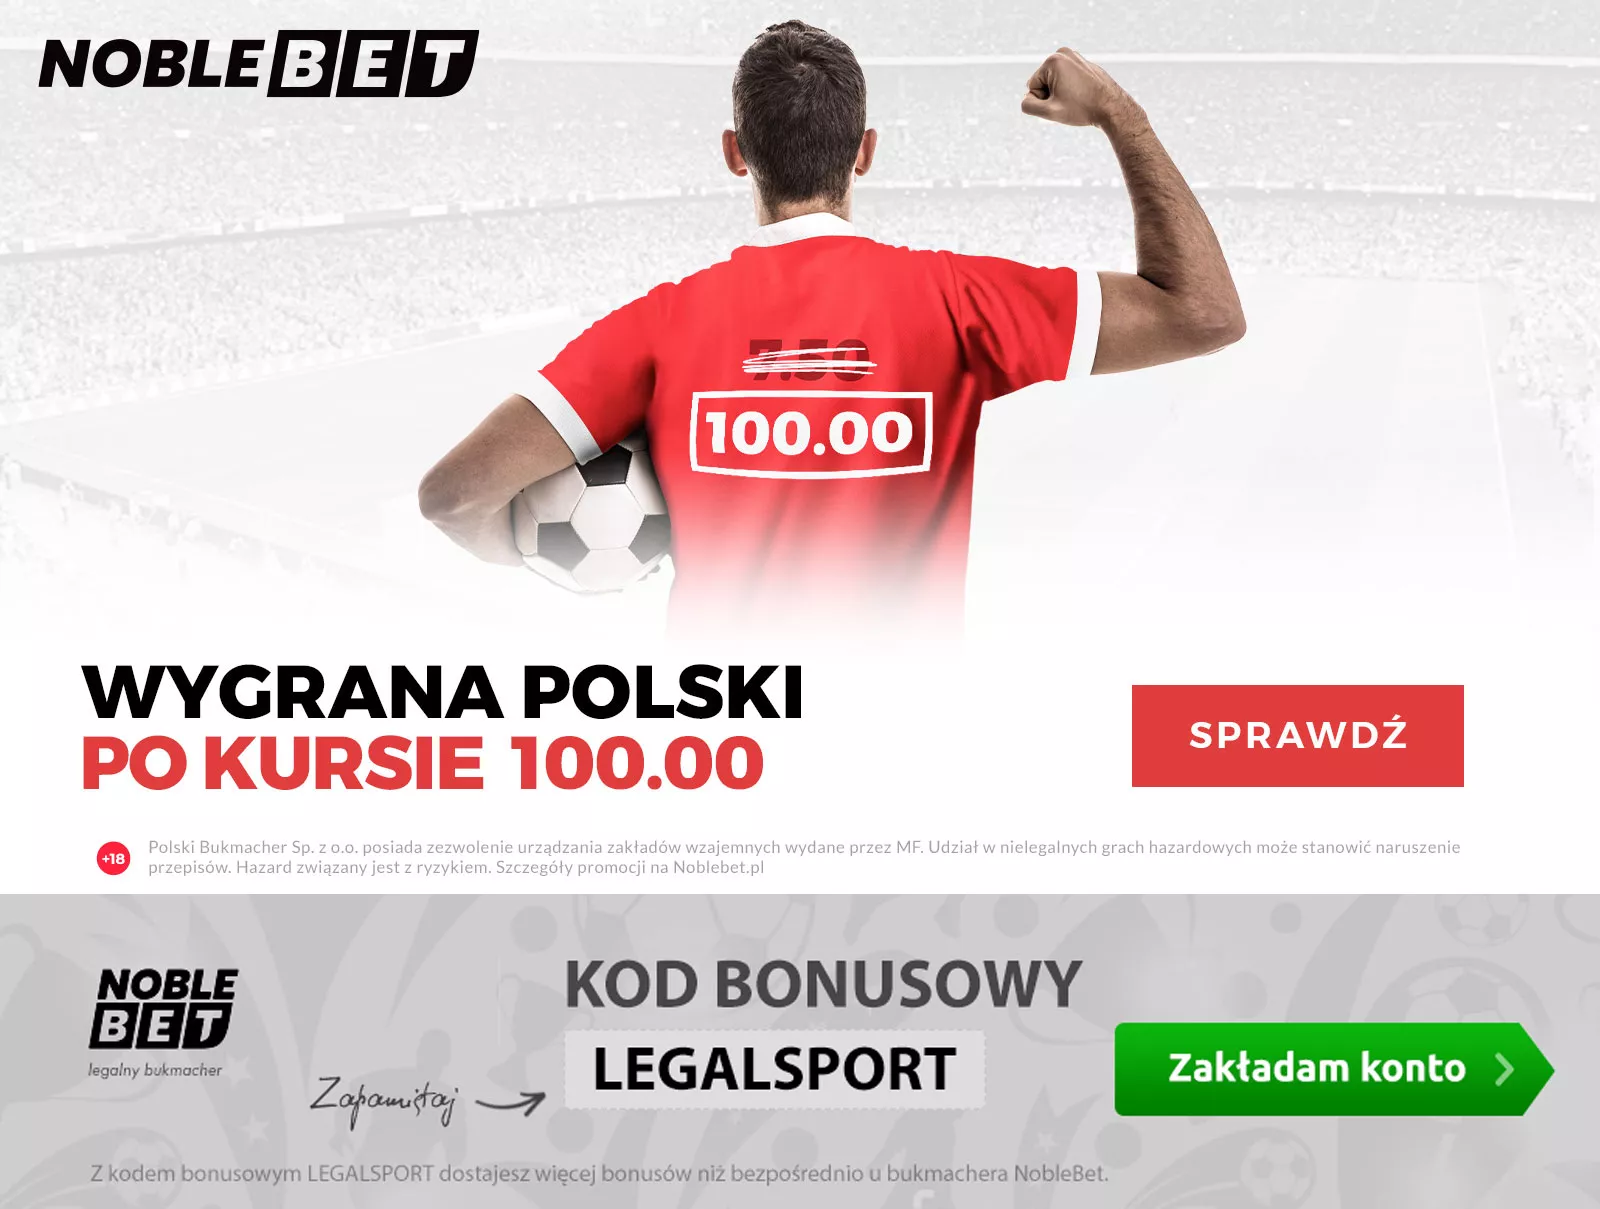 Wygrana reprezentacji Polski z kursem 100.00